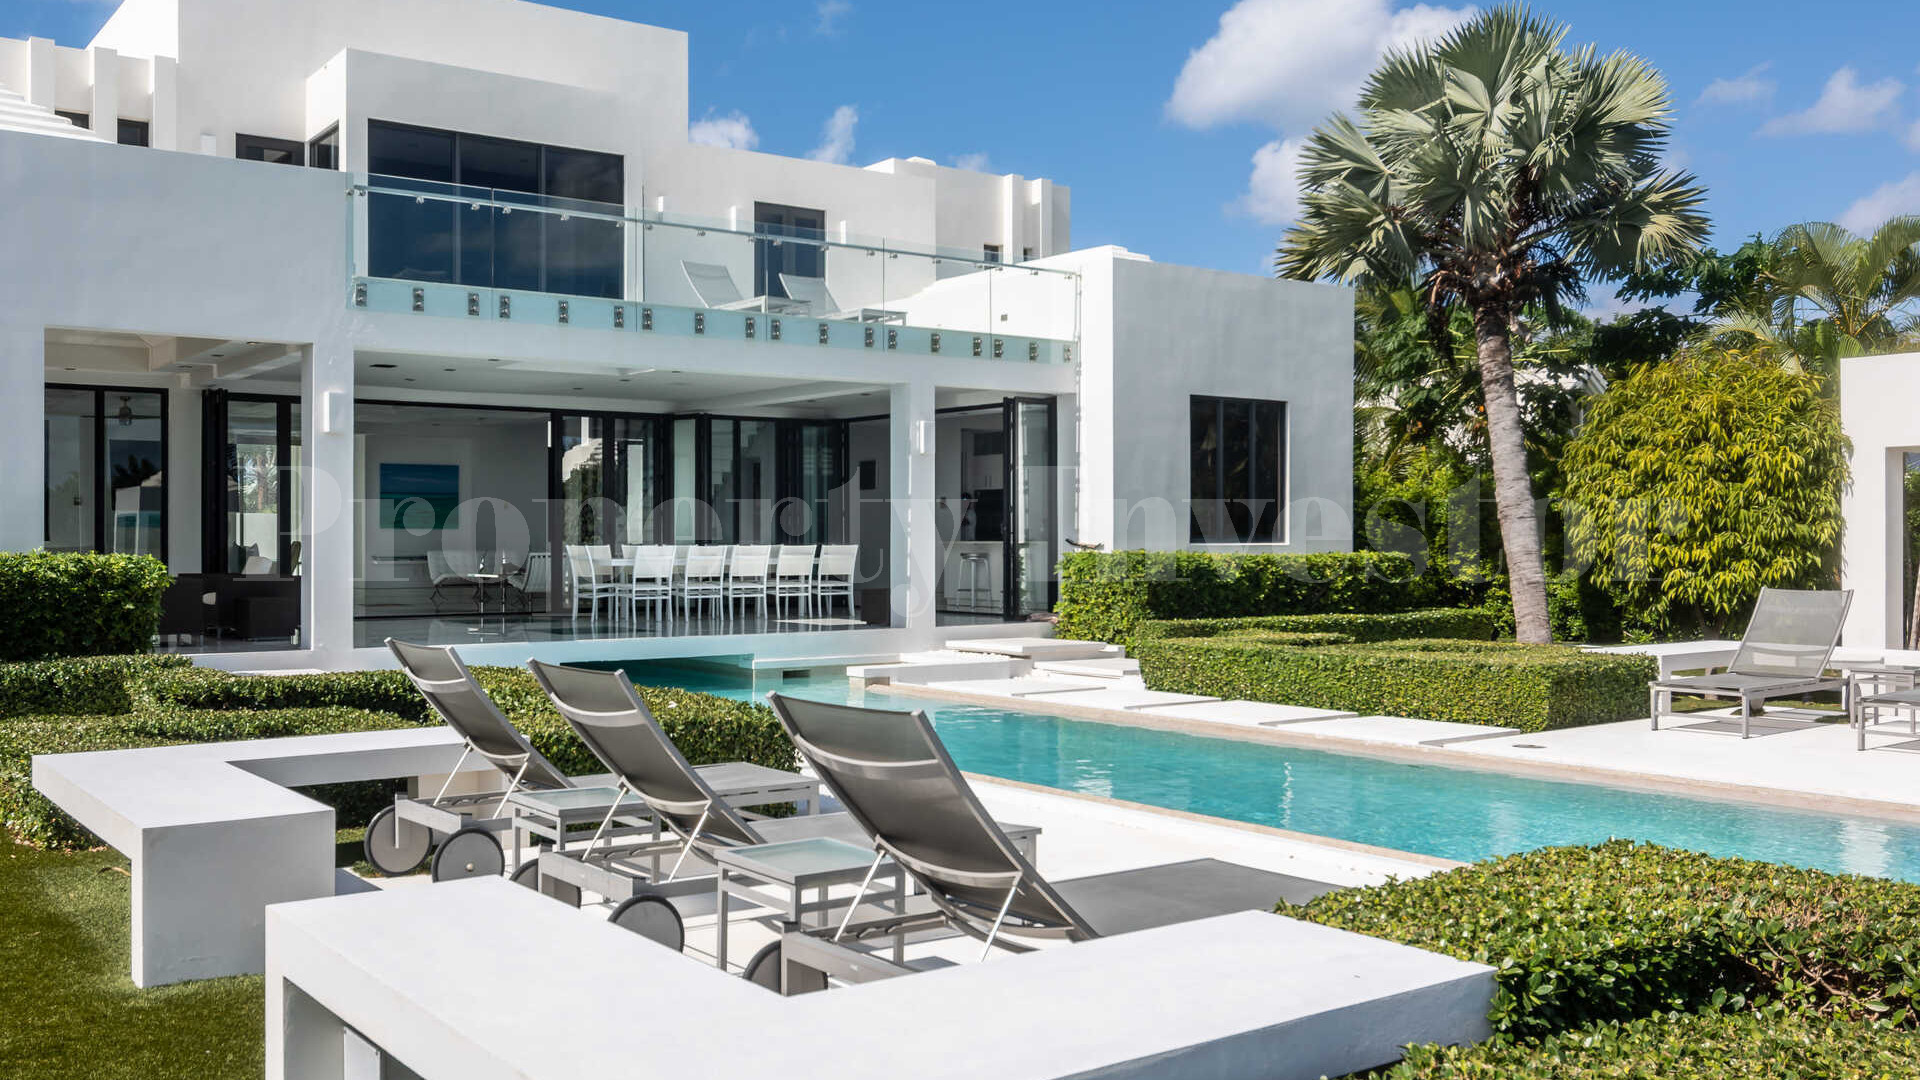 Dazzling 5 Bedroom Luxury Villa with Private Boat Dock in Leeward, Turks & Caicos